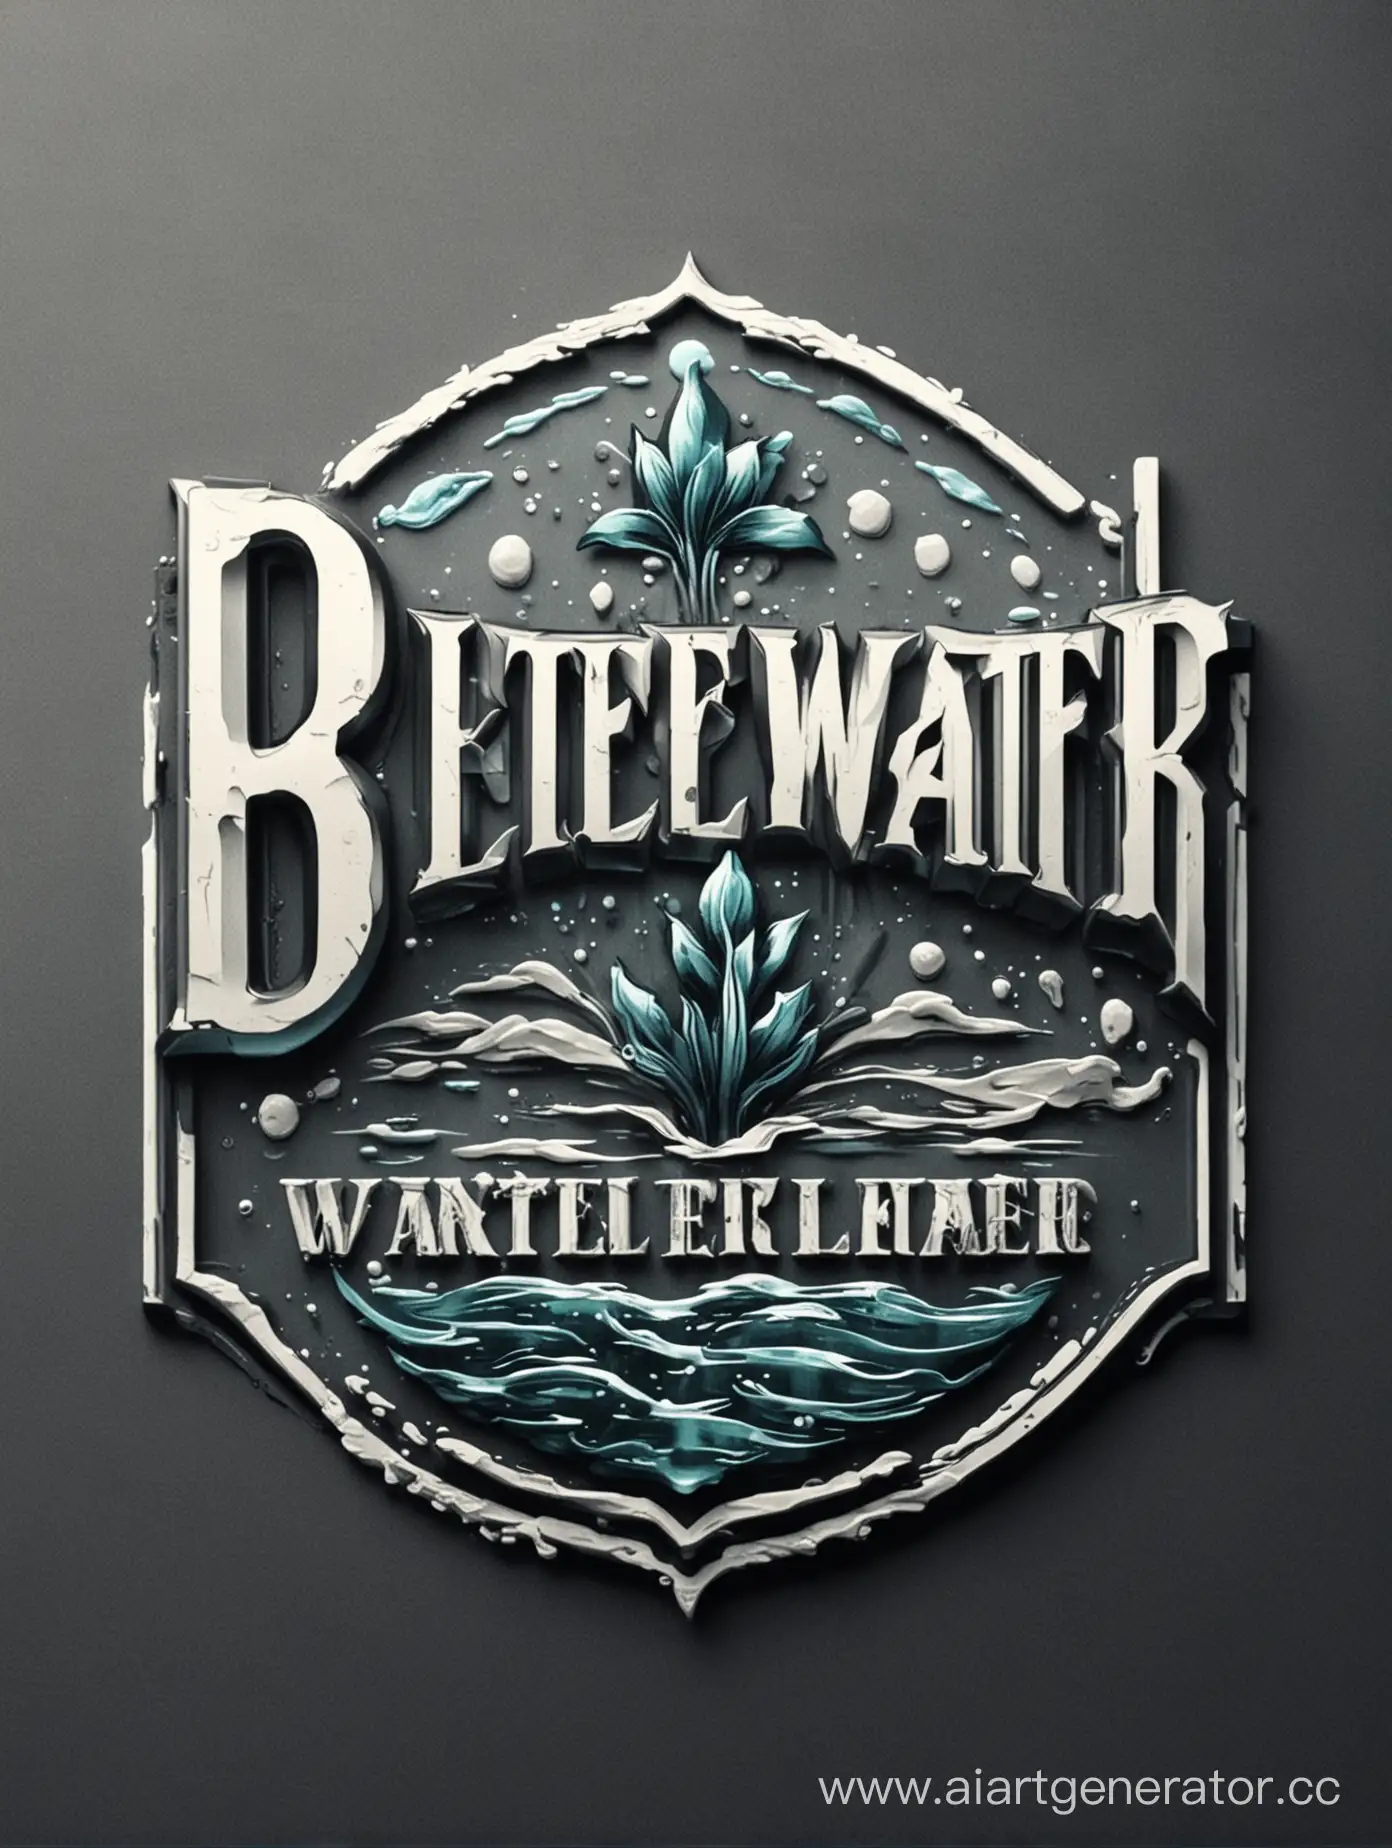 Логотип элитной, оригинальной, эстетичной и освежающей компании "BRUTELWATER"